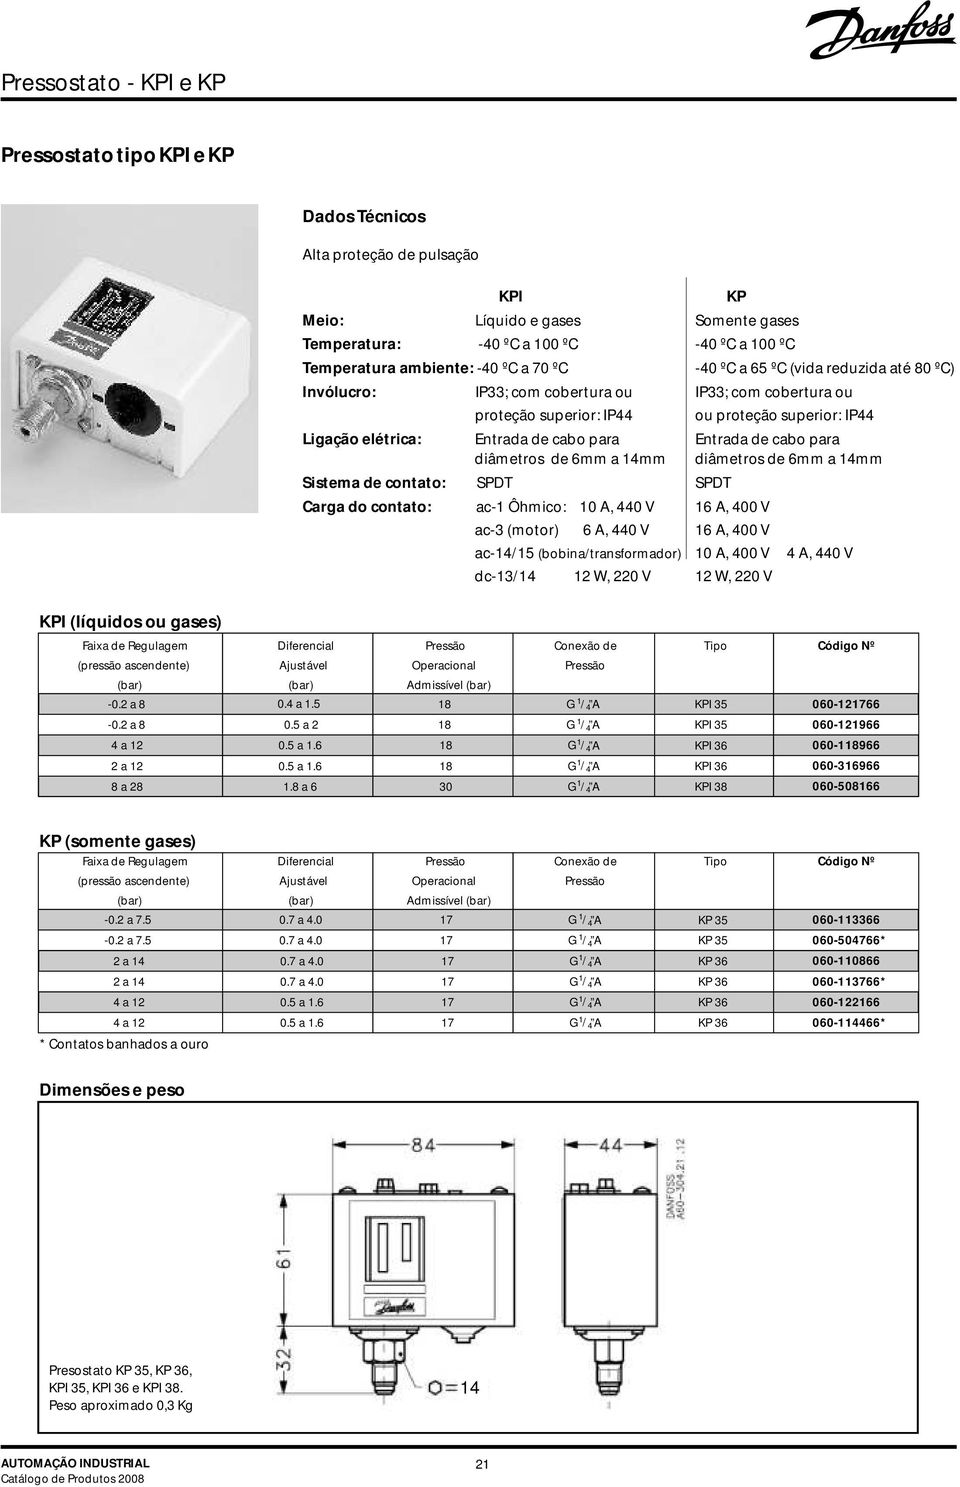 para diâmetros de 6mm a mm diâmetros de 6mm a mm Sistema de contato: SPDT SPDT Carga do contato: ac Ôhmico: A, V 6 A, V ac3 (motor) 6 A, V 6 A, V ac/5 (bobina/transformador) A, V A, V dc3/ W, V W, V